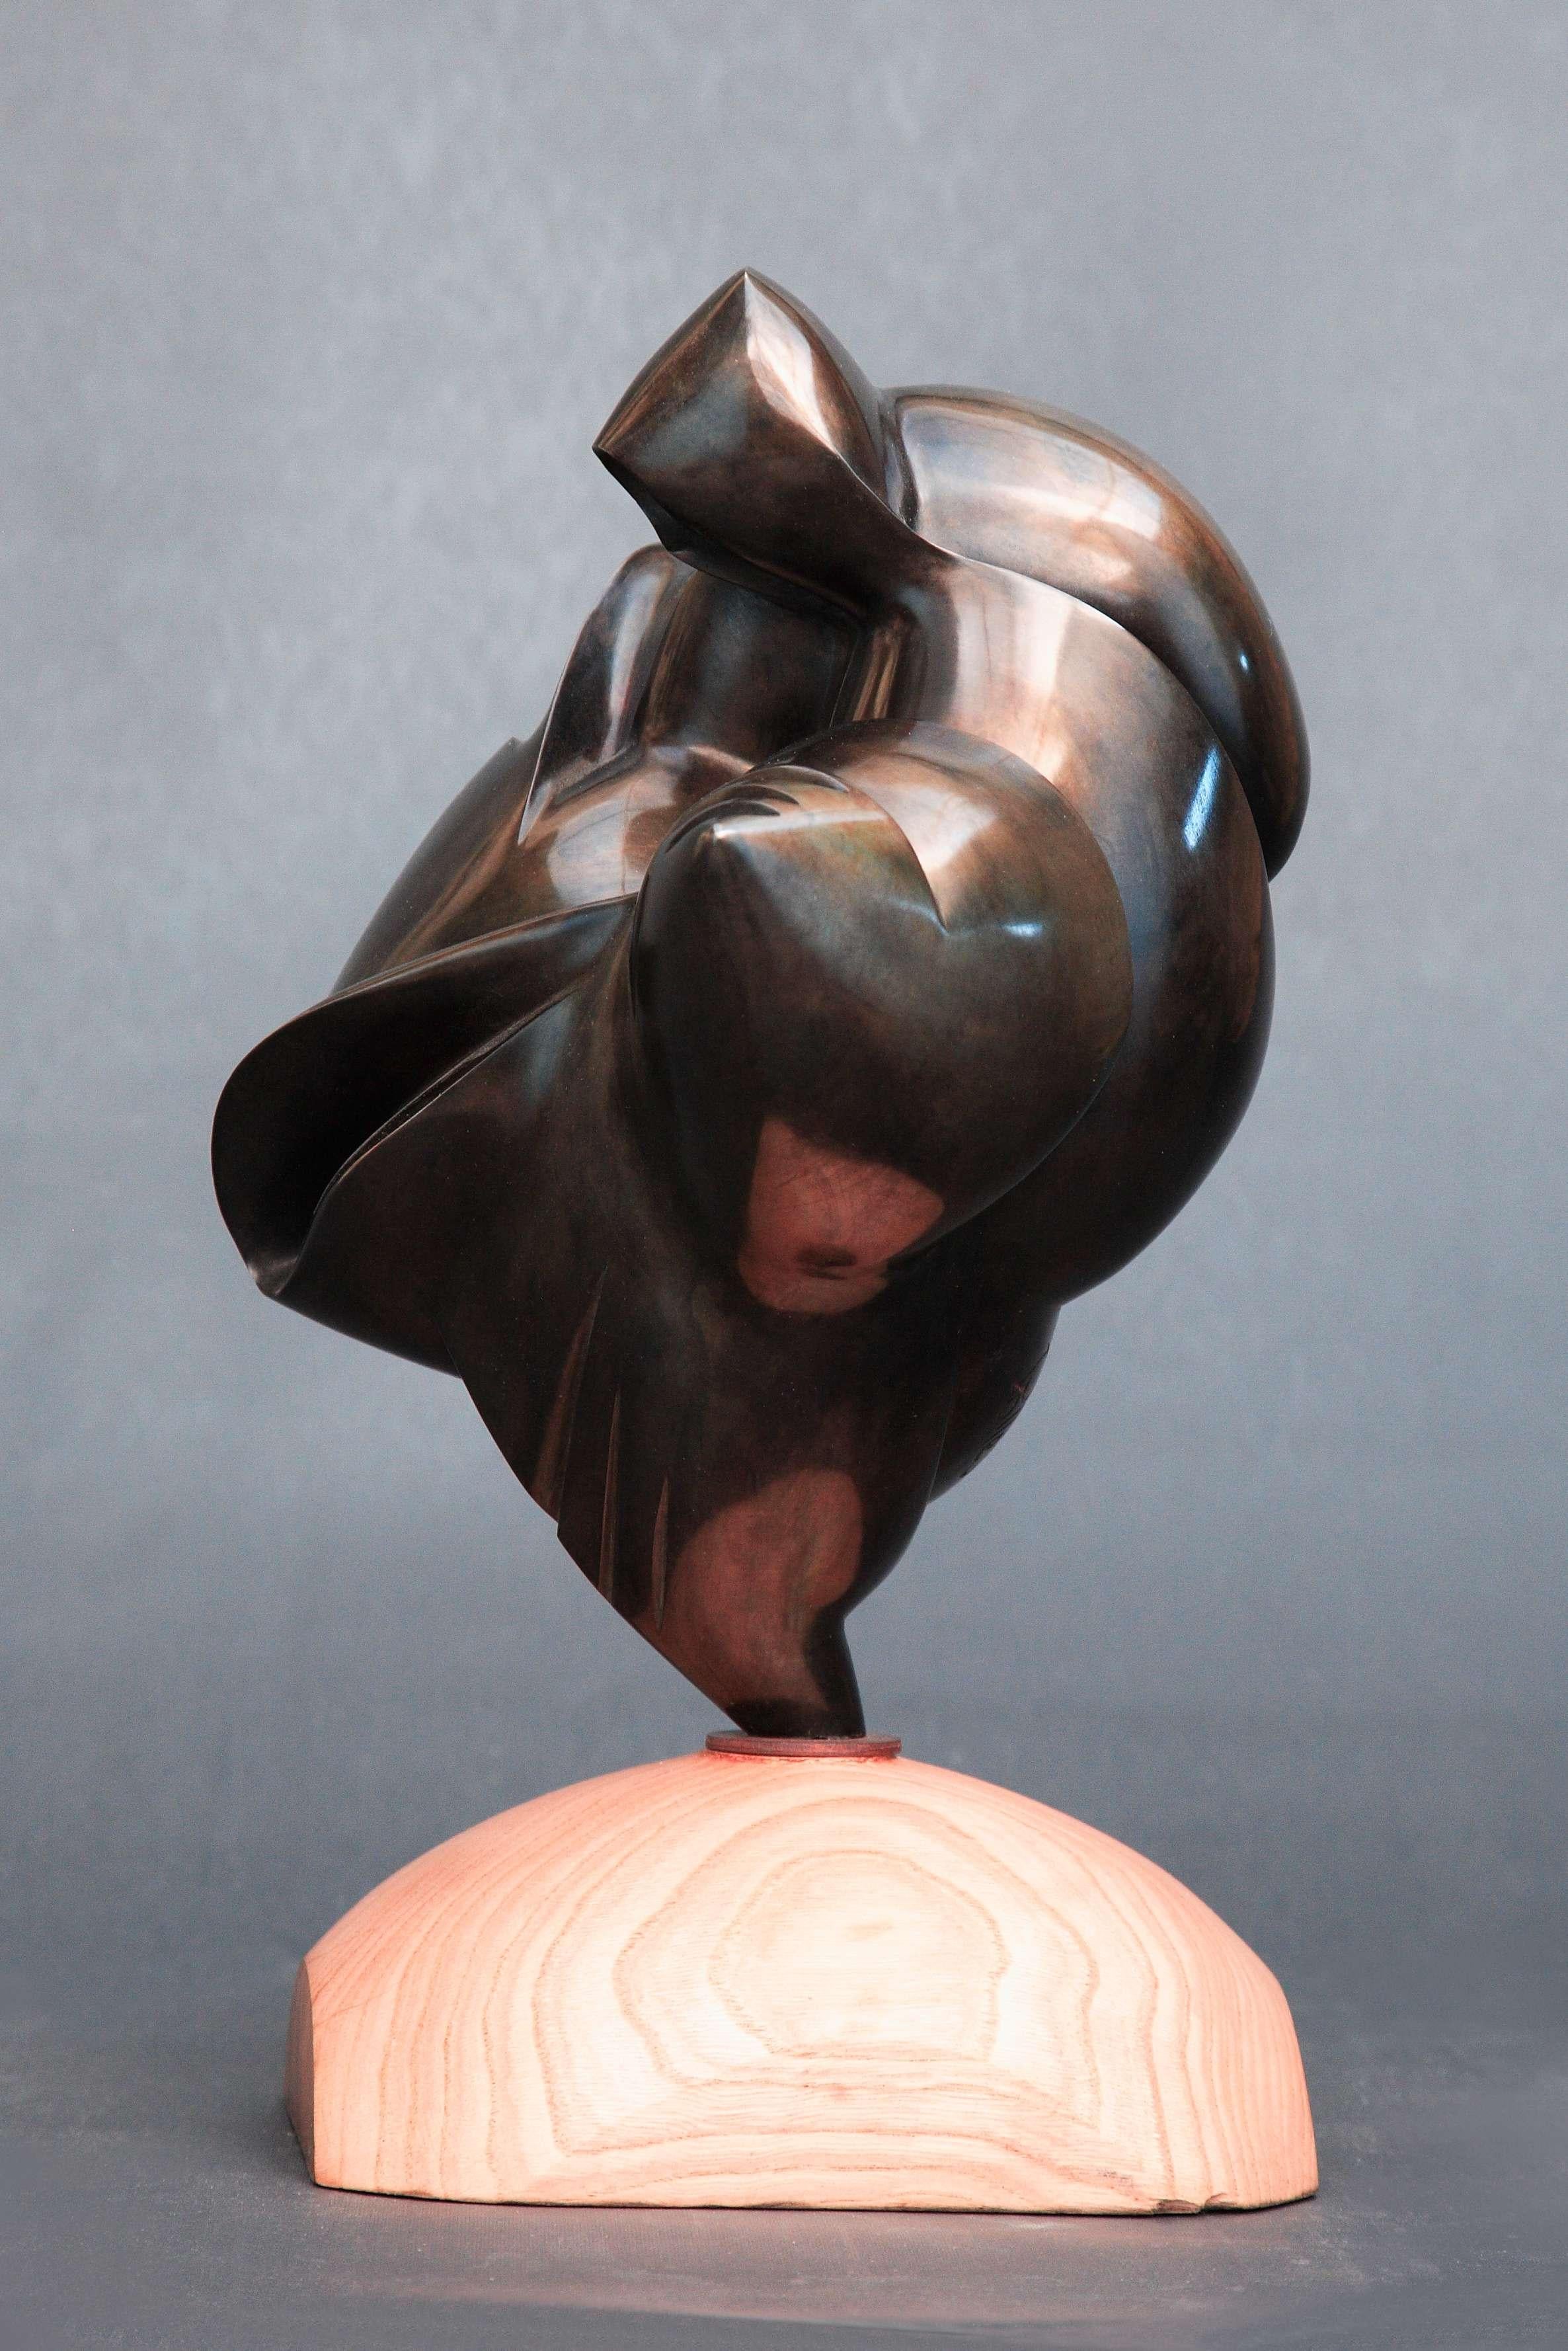 Pollès - Sculpture en bronze - Thelxinoé
Bronze
Edition : 1/4
2016
Dimensions : 28 x 21 x 20 cm
Signé et numéroté

BIOGRAPHIE
Pollès est né à Paris en 1945
Comme Léonard de Vinci à la recherche de la perfection anatomique, de la représentation du